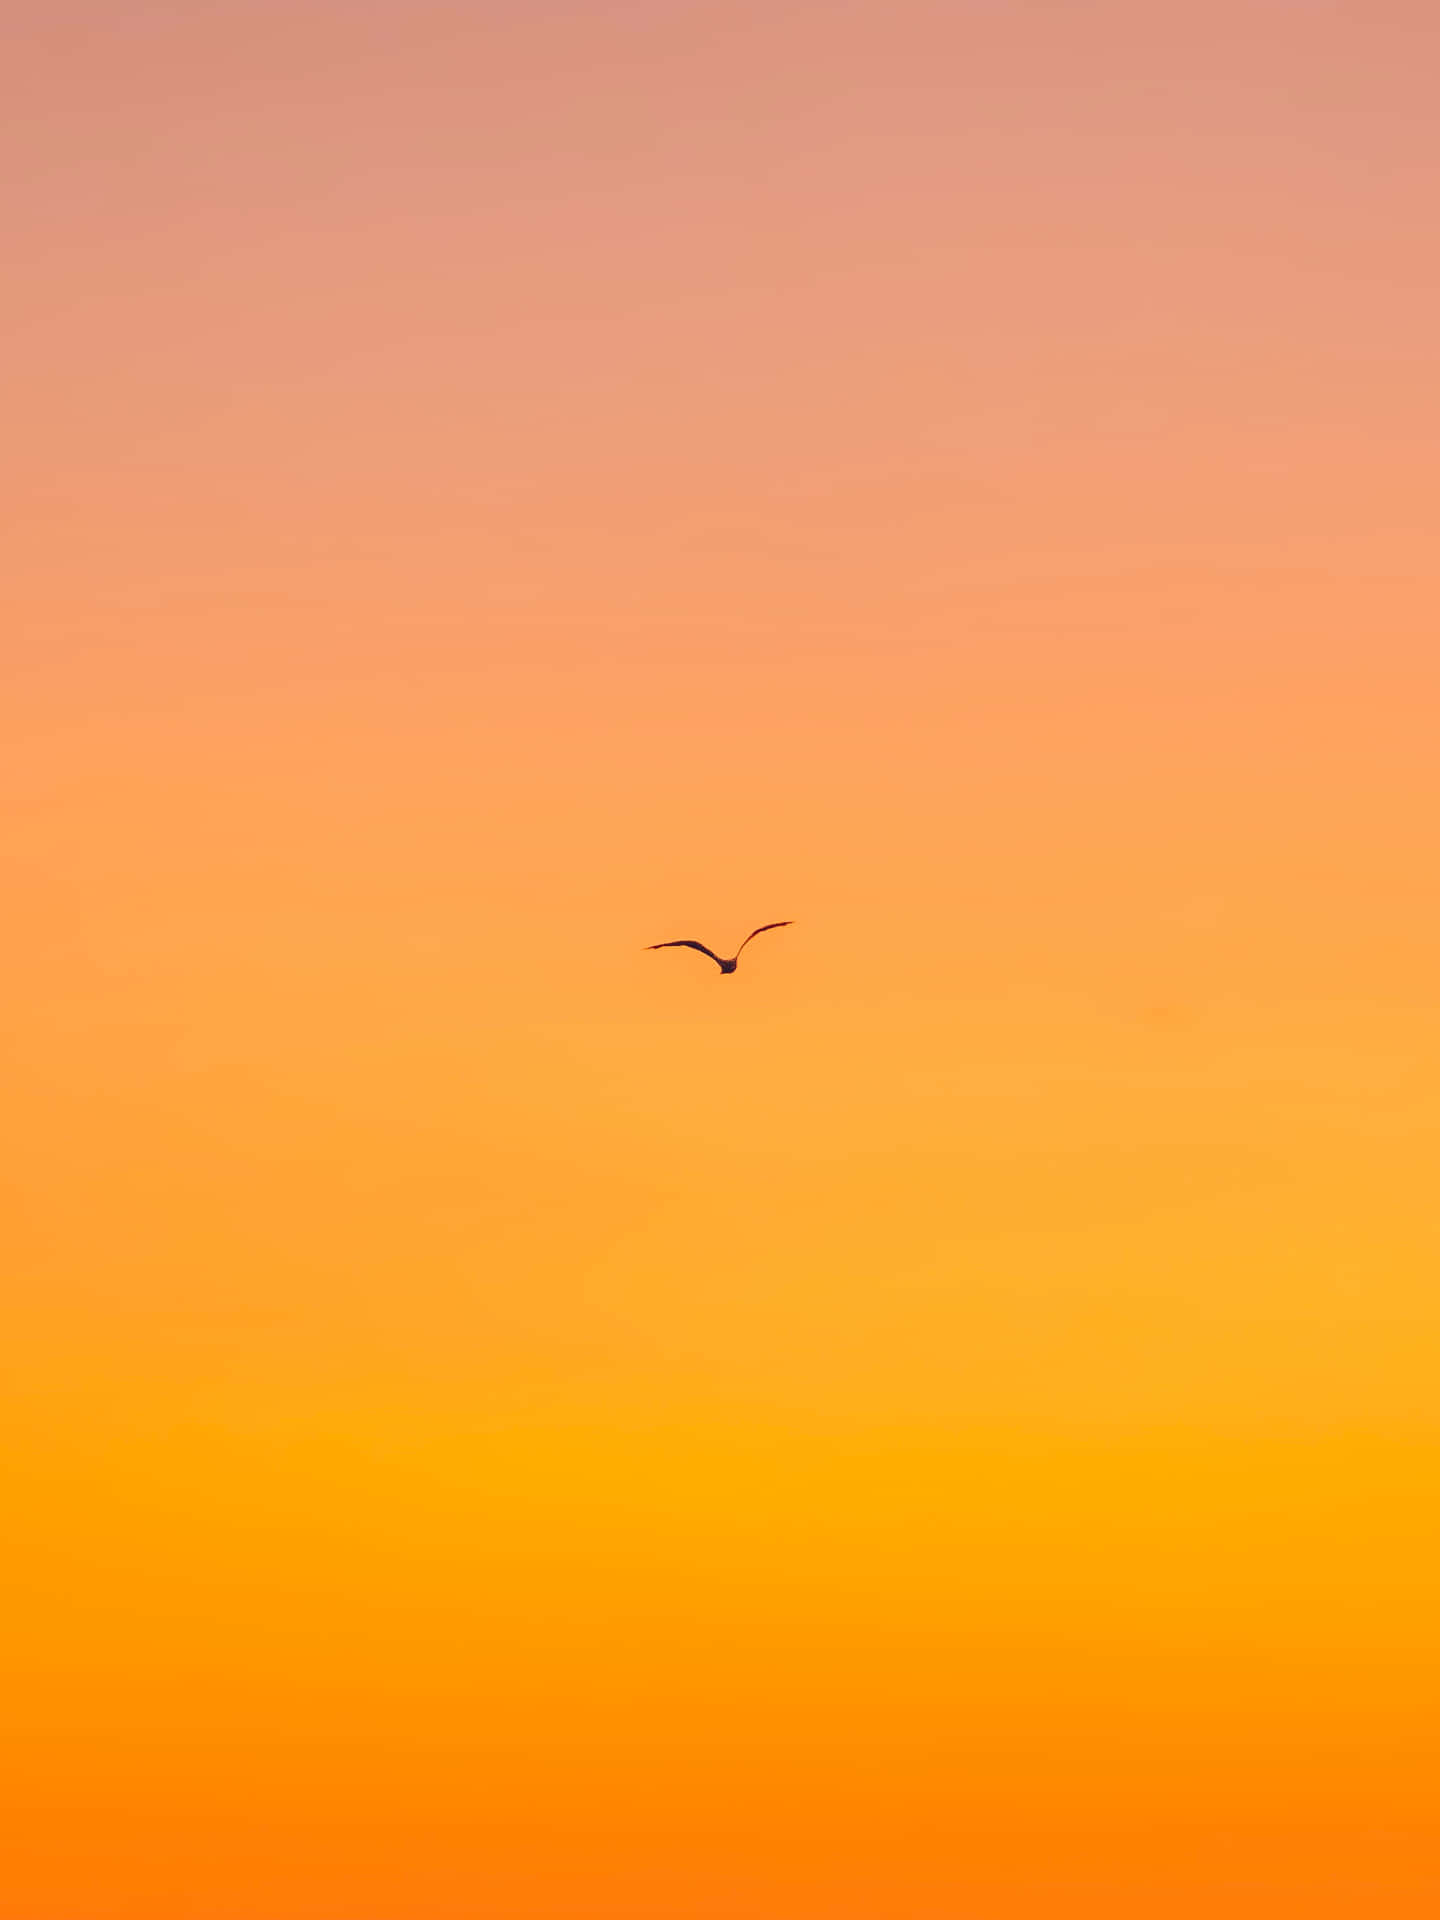 Vistadel Cielo En Color Naranja Del Iphone. Fondo de pantalla